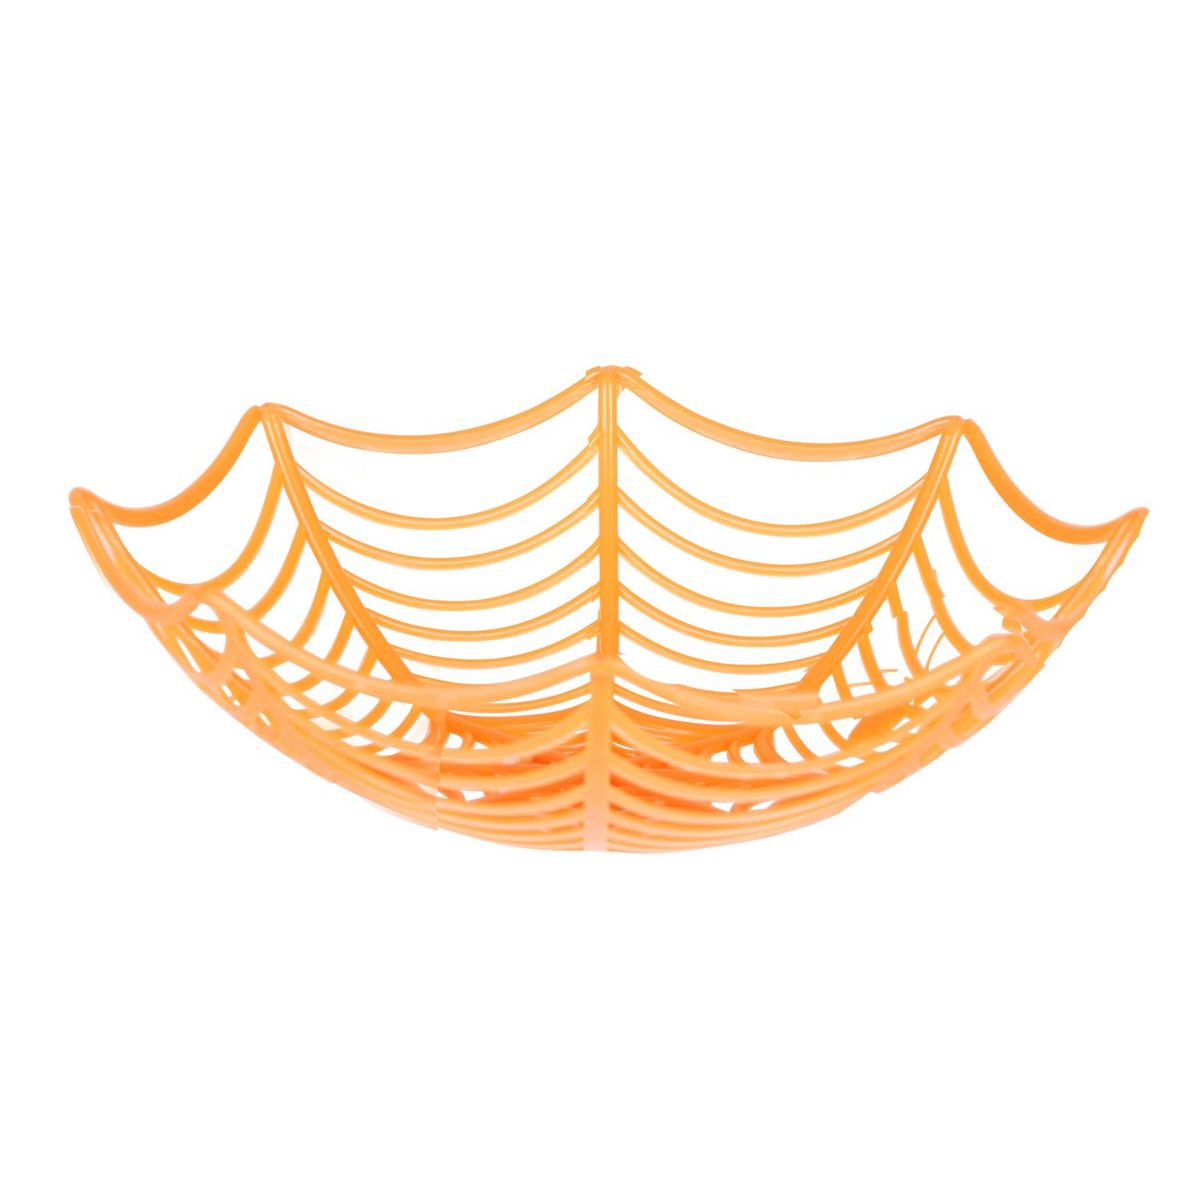 DIVERS Décoration d'Halloween - Corbeille à fruits - Orange